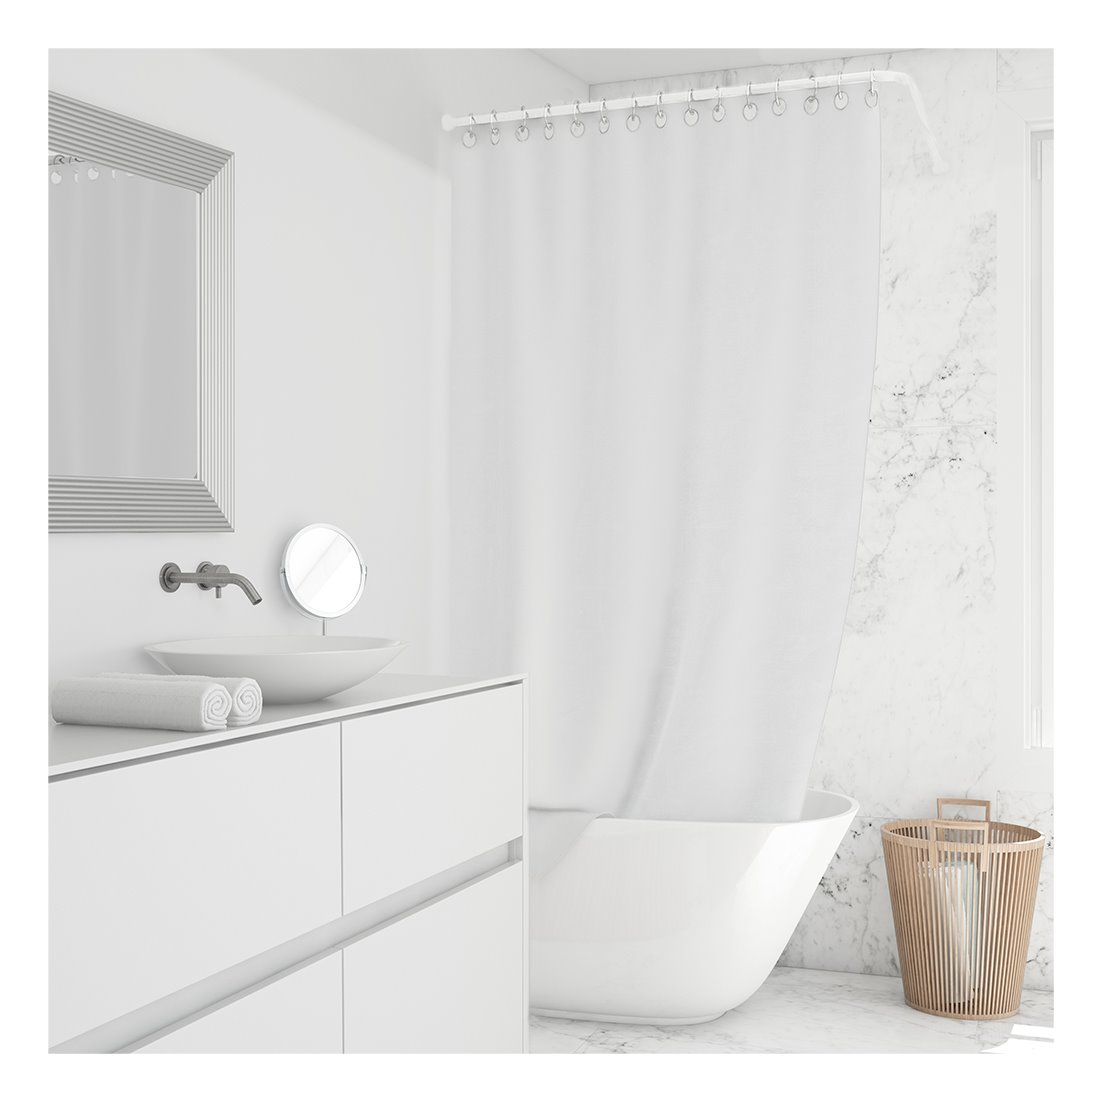 Acomoda textil – barra cortina ducha universal de aluminio en forma de l+u.